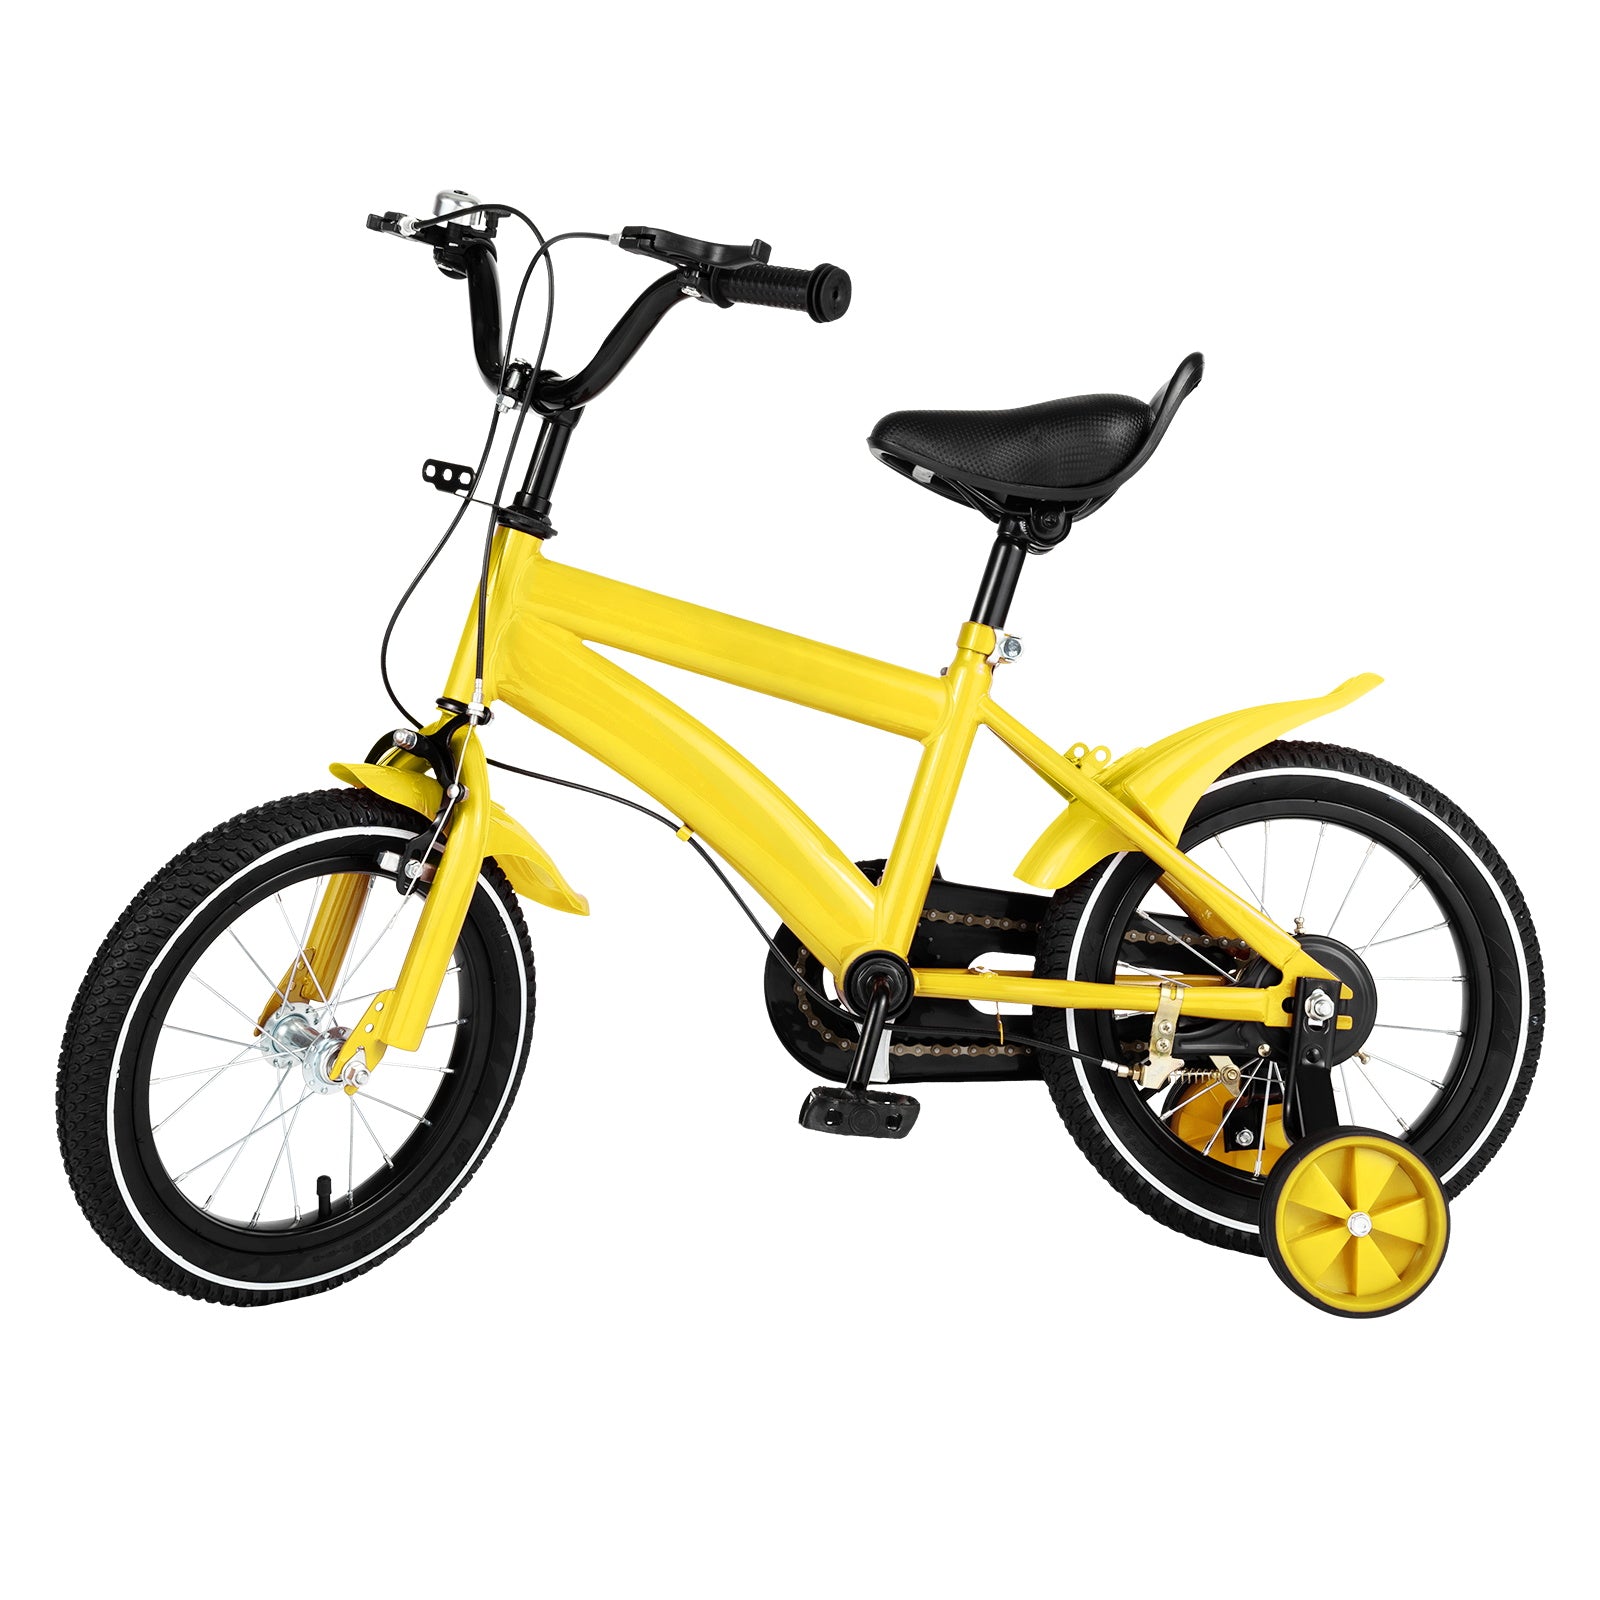 14" Bicicletta per Bambini /Bambine Kid Balance Riding Bike con Ruote da Allenamento Giallo